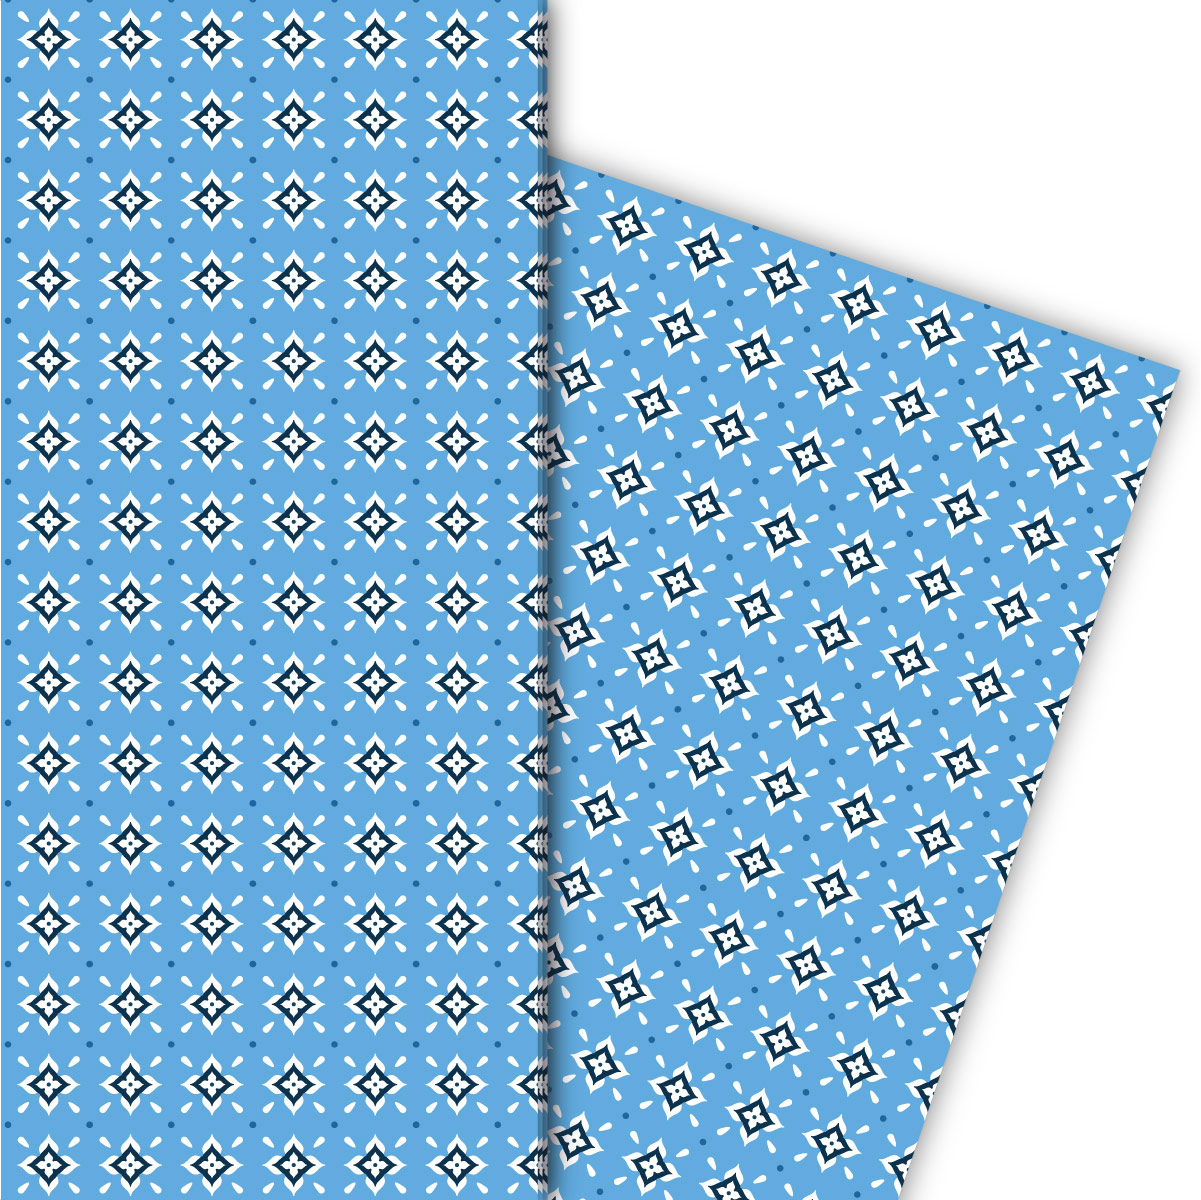 Kartenkaufrausch: Grafisches Geschenkpapier mit kleinem aus unserer Design Papeterie in hellblau